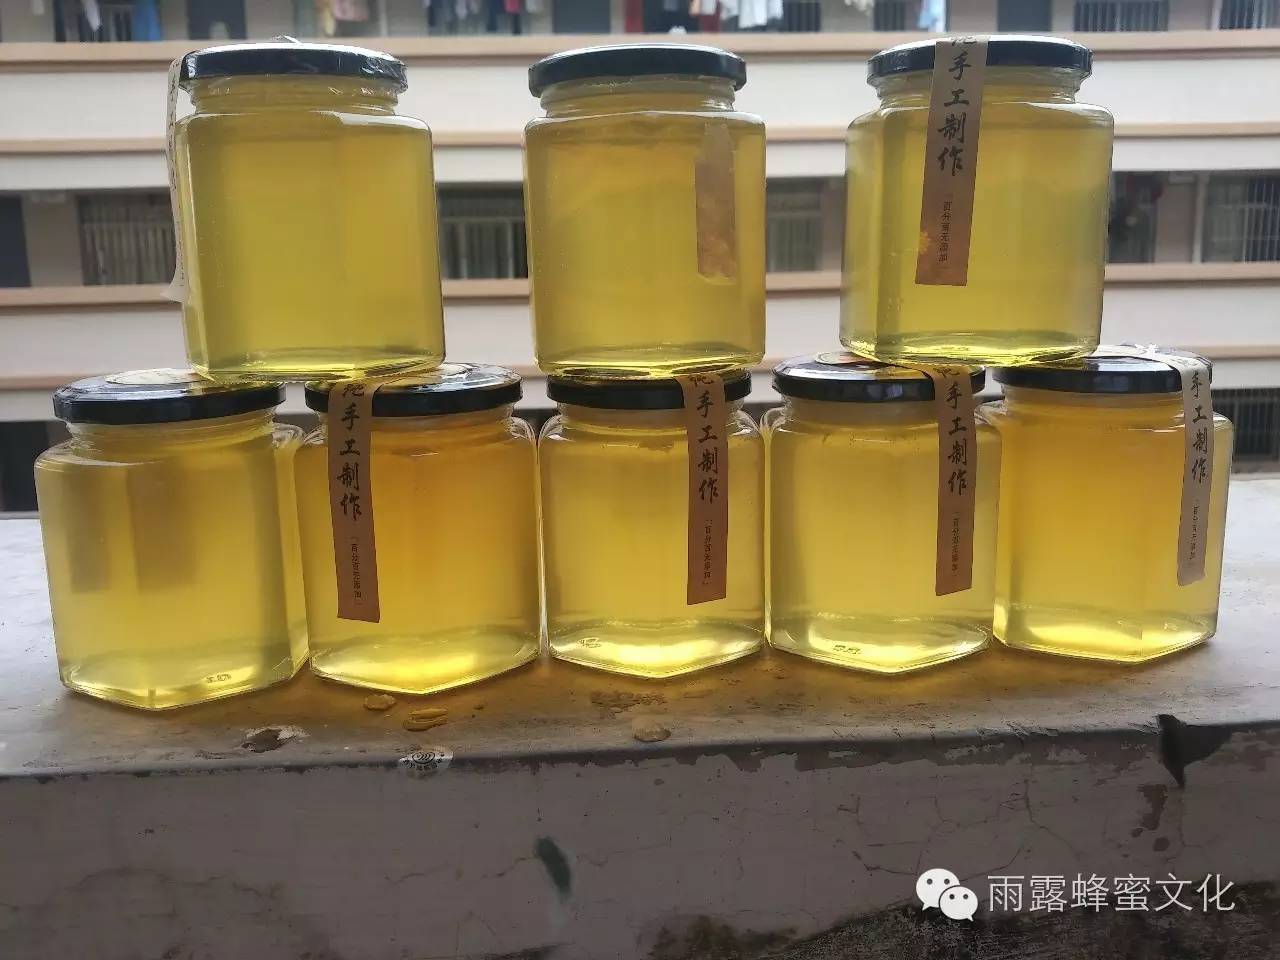 蜂蜜 价格 蜂蜜酒 延缓衰老 蜂胶食用方法 蜂蜜市场